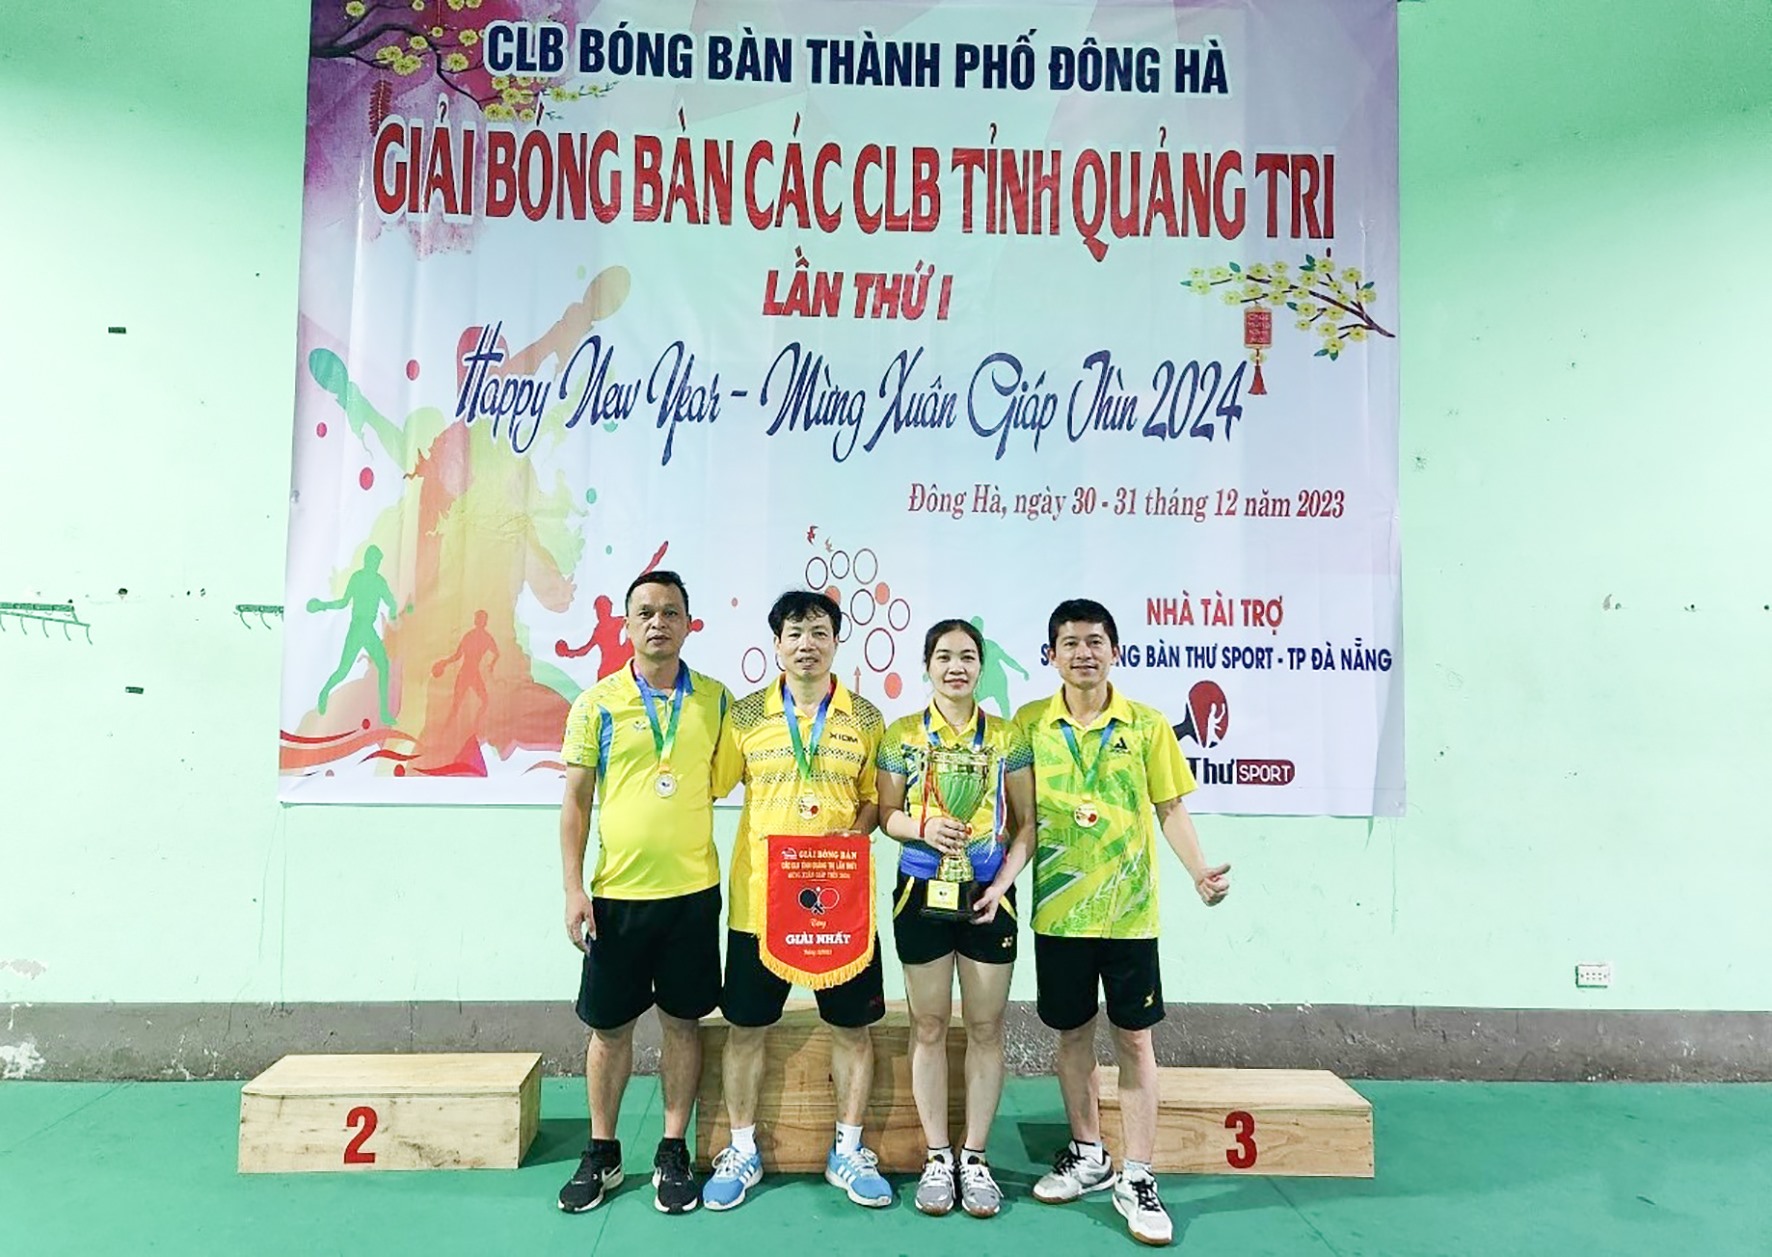 Thầy giáo Lê Văn Thạo (ngoài cùng bên trái) cùng đồng đội nhận giải Nhất tại Giải bóng bàn các CLB tỉnh Quảng Trị lần thứ I - Mừng xuân Giáp Thìn - 2024 - Ảnh: NVCC